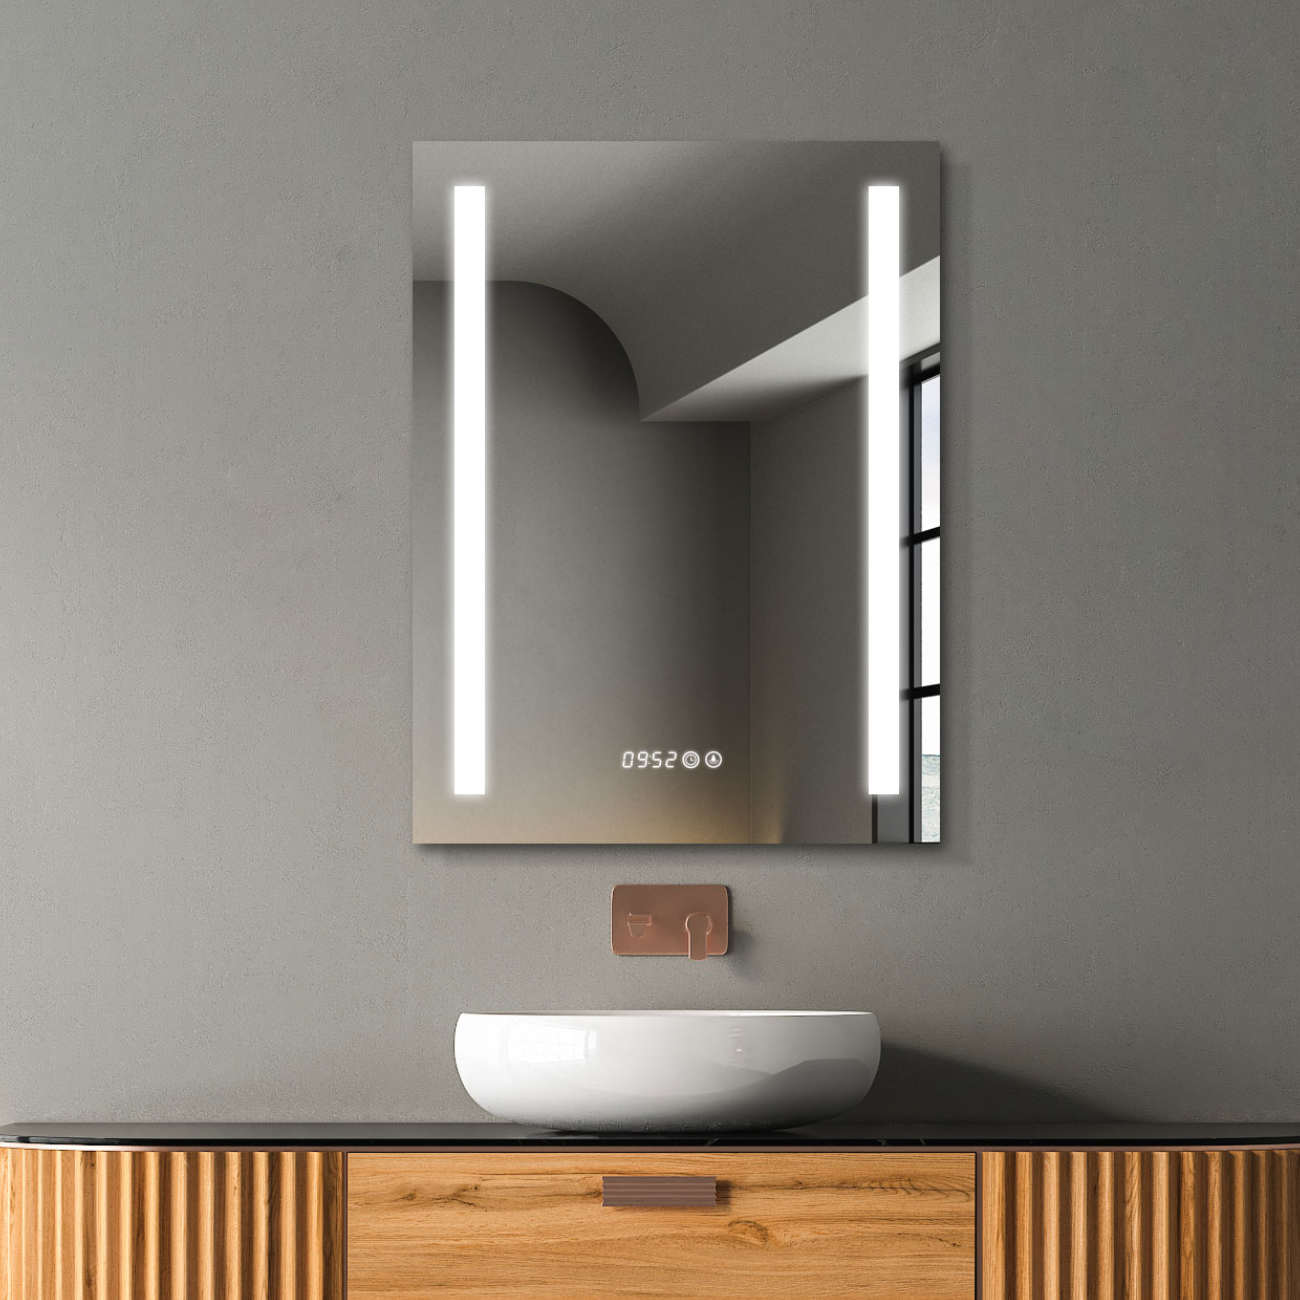 Design-Badspiegel mit Beleuchtung, Lichtwechsel, Antibeschlag-Funktion und Digital Uhr